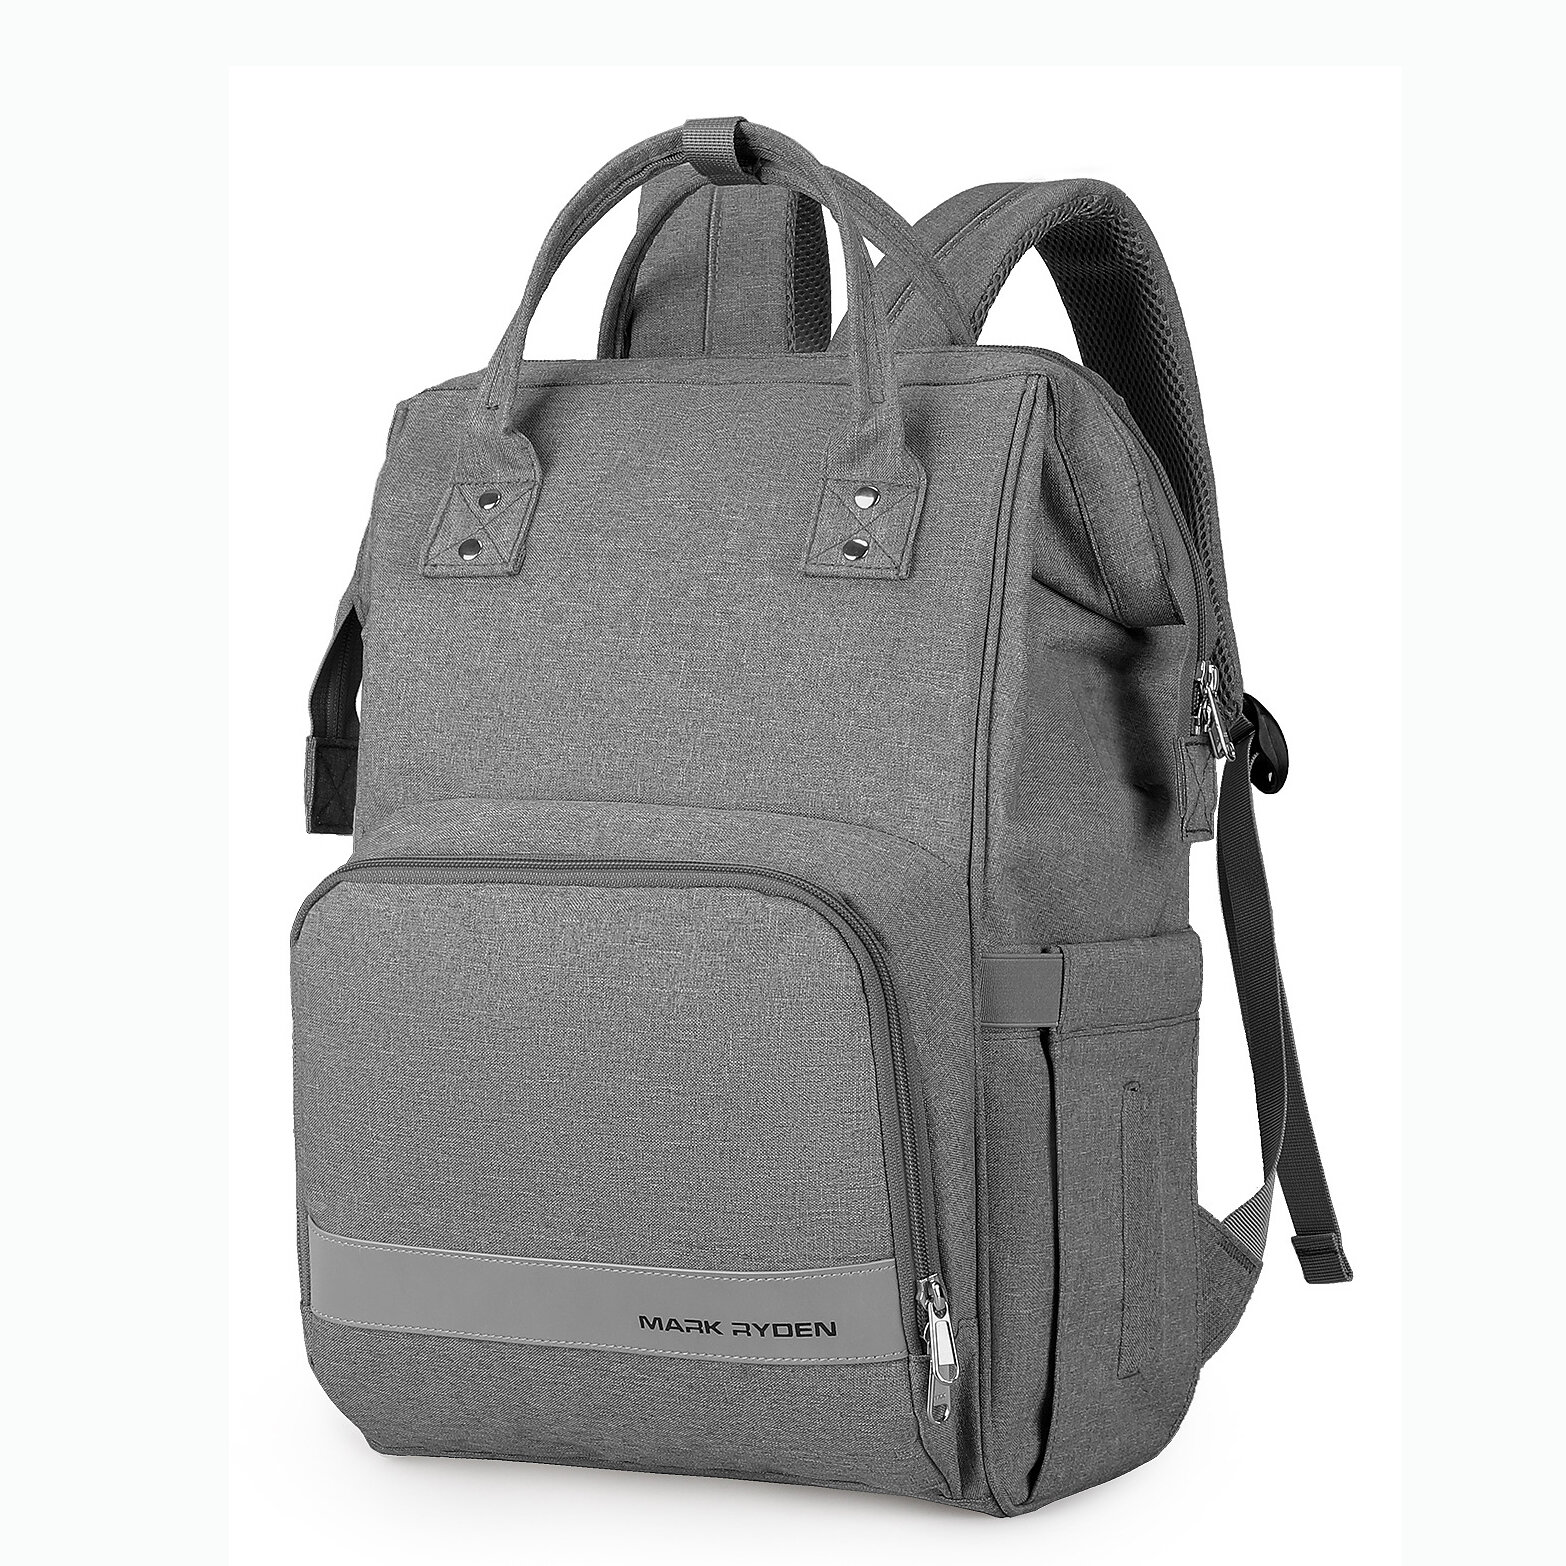 

Mark Ryden MR8703 15.6 inch Laptop Bag 17L Large Capacity Backpack with Stroller Strap Paper Pocket USB Charging Port